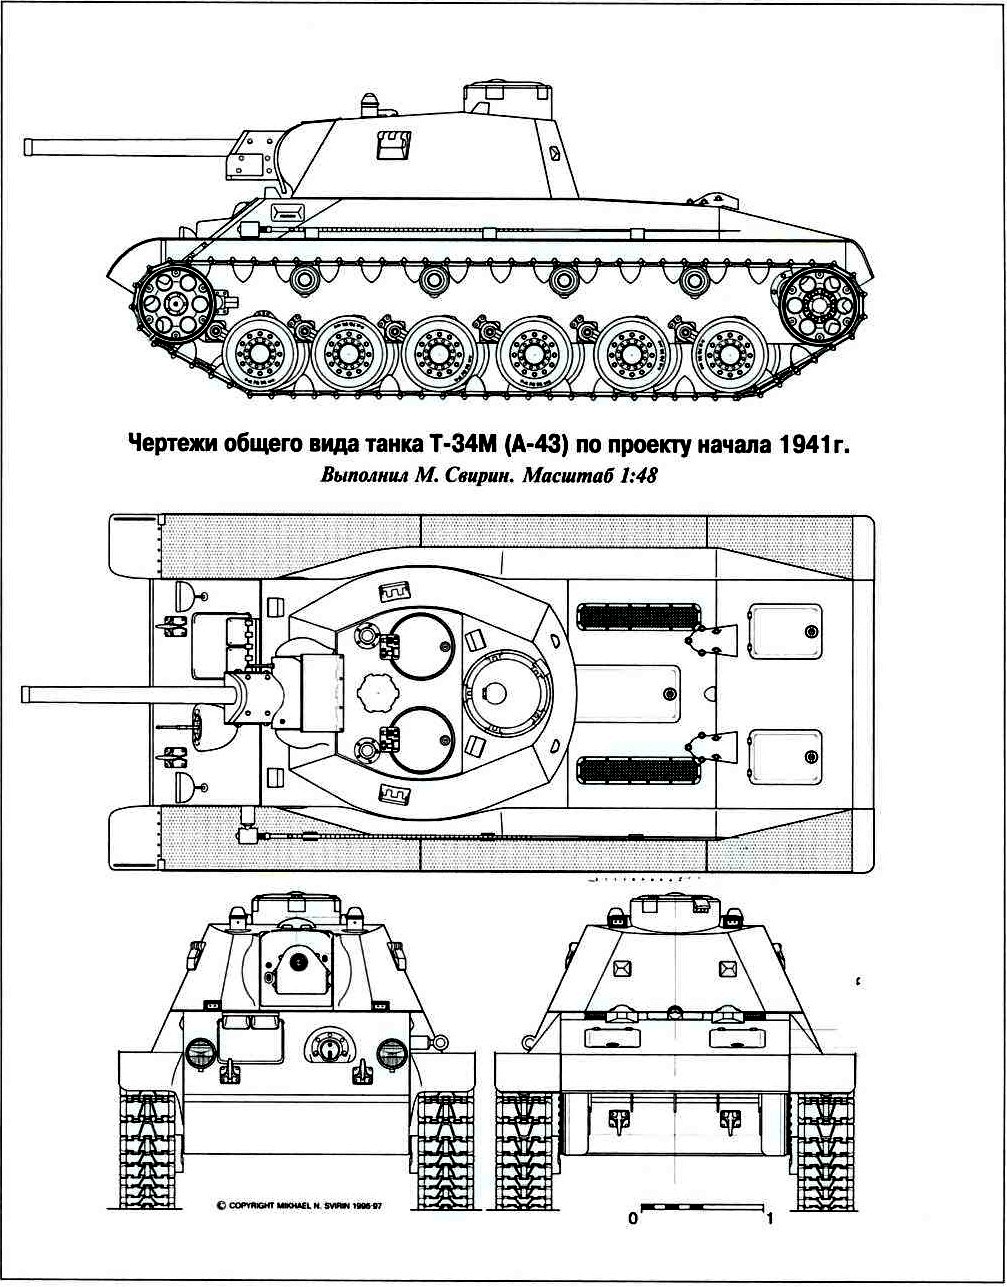 Танк Т-34М – несостоявшаяся модернизация знаменитой «тридцатьчетвёрки».